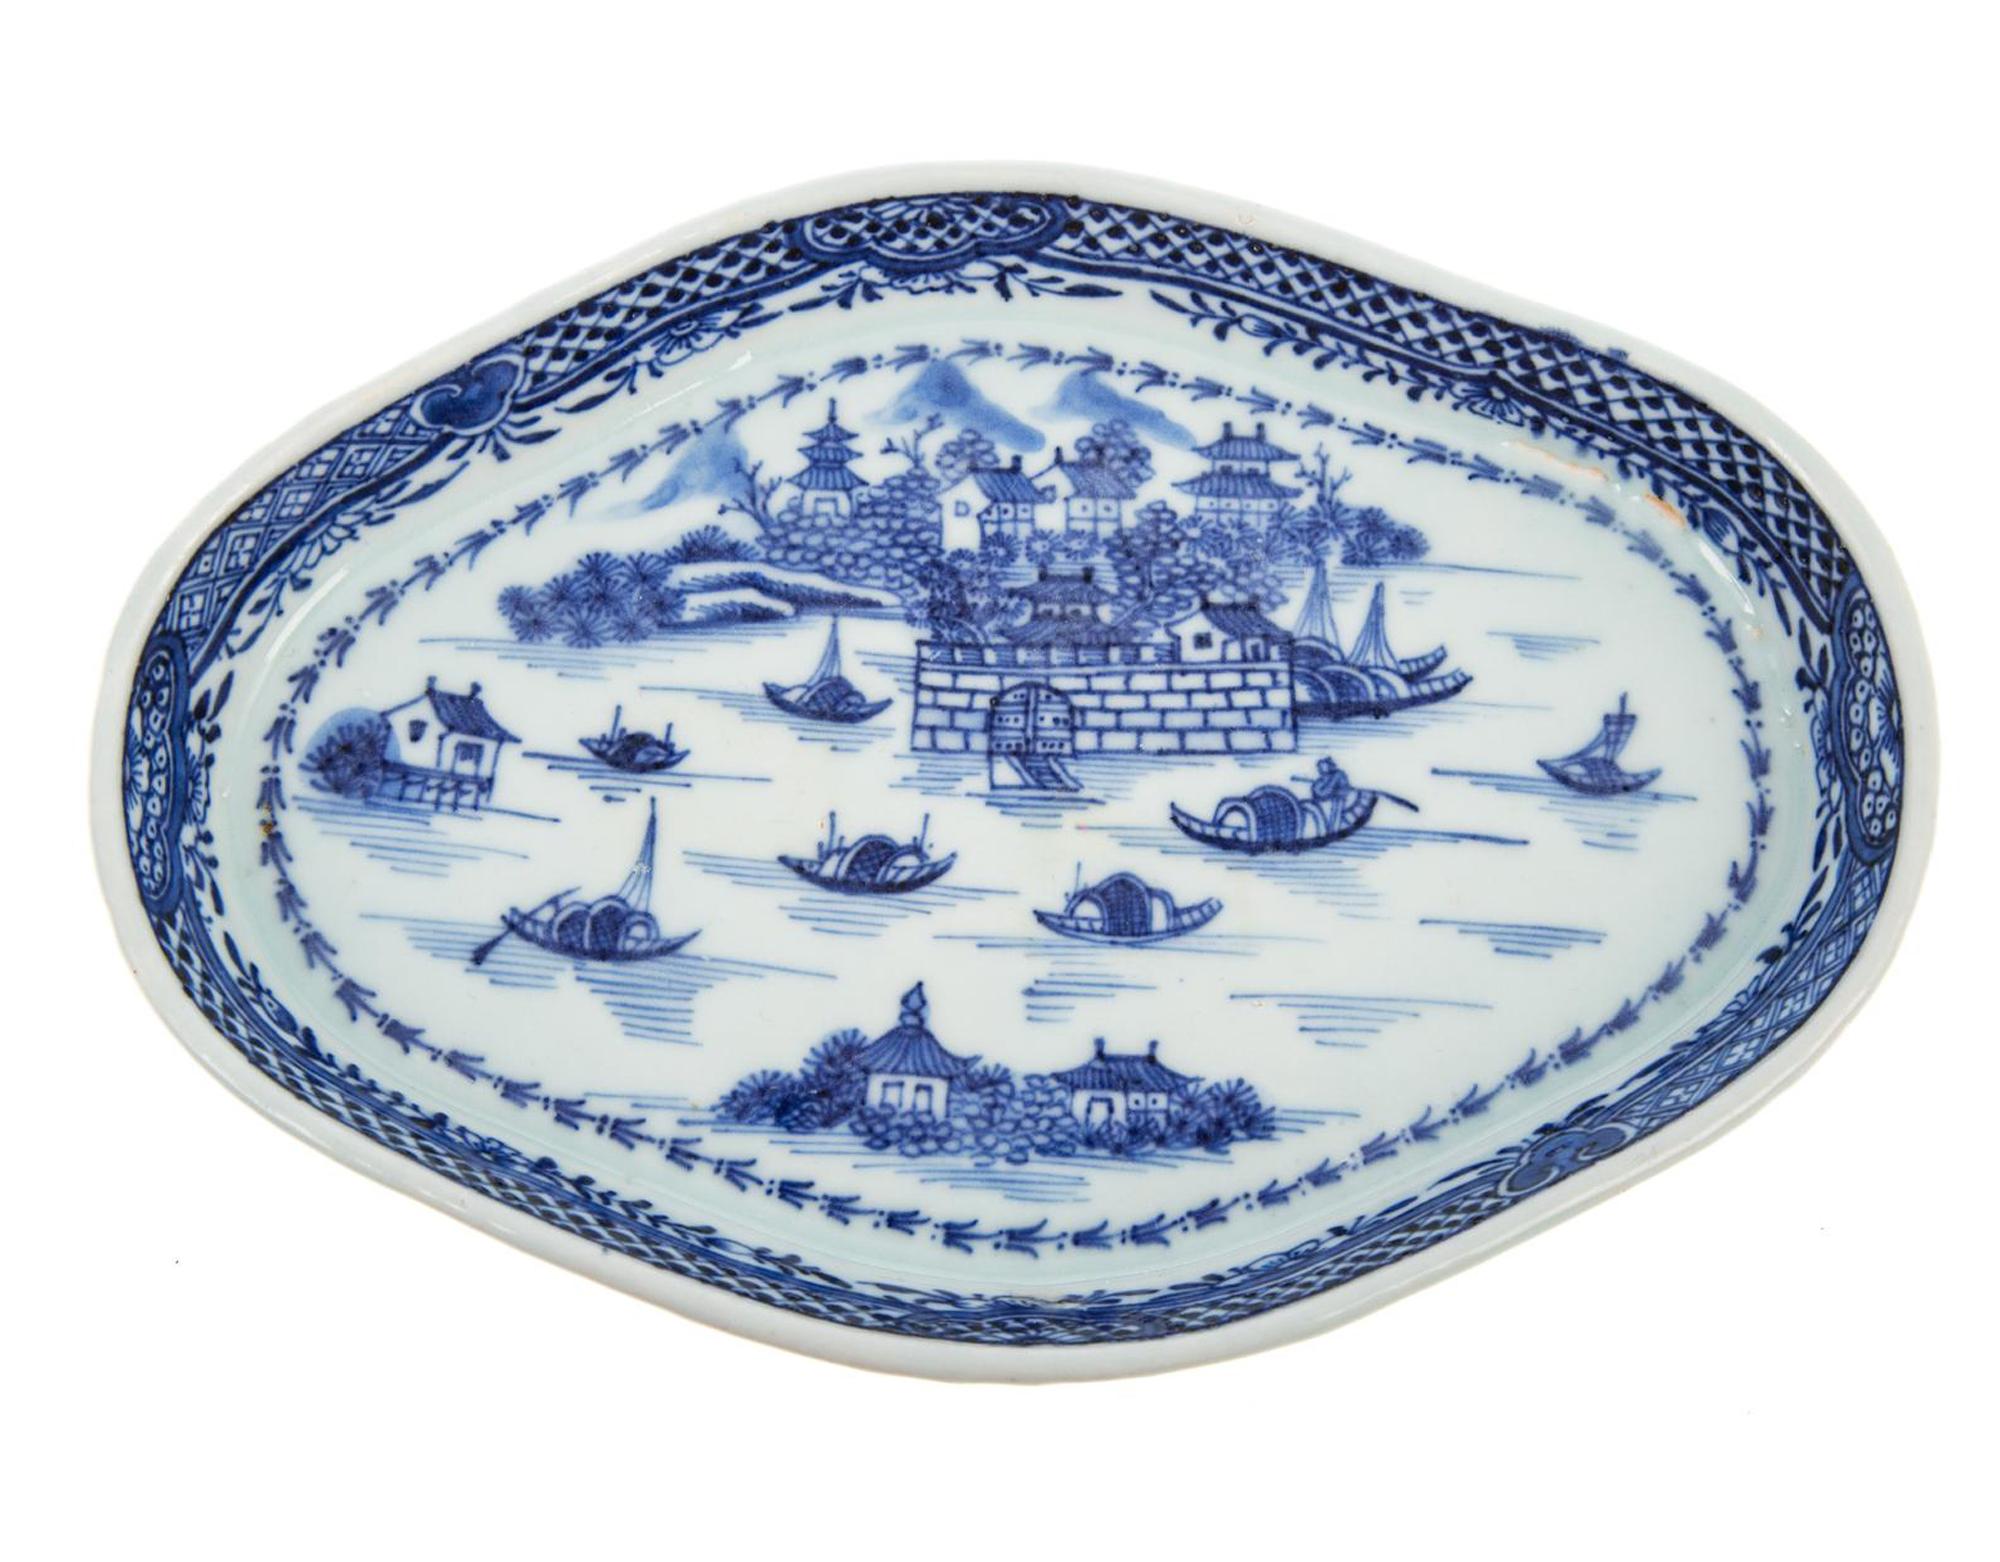 Chinesische Export Porzellan blau & weiß Löffel Tablett mit der niederländischen Folly Fort,
Um 1775

Die seltene chinesische Exportschale mit blau-weißem Vierpass zeigt das holländische Folly Fort im Kanton-Fluss.

Die Porzellanschale ist in